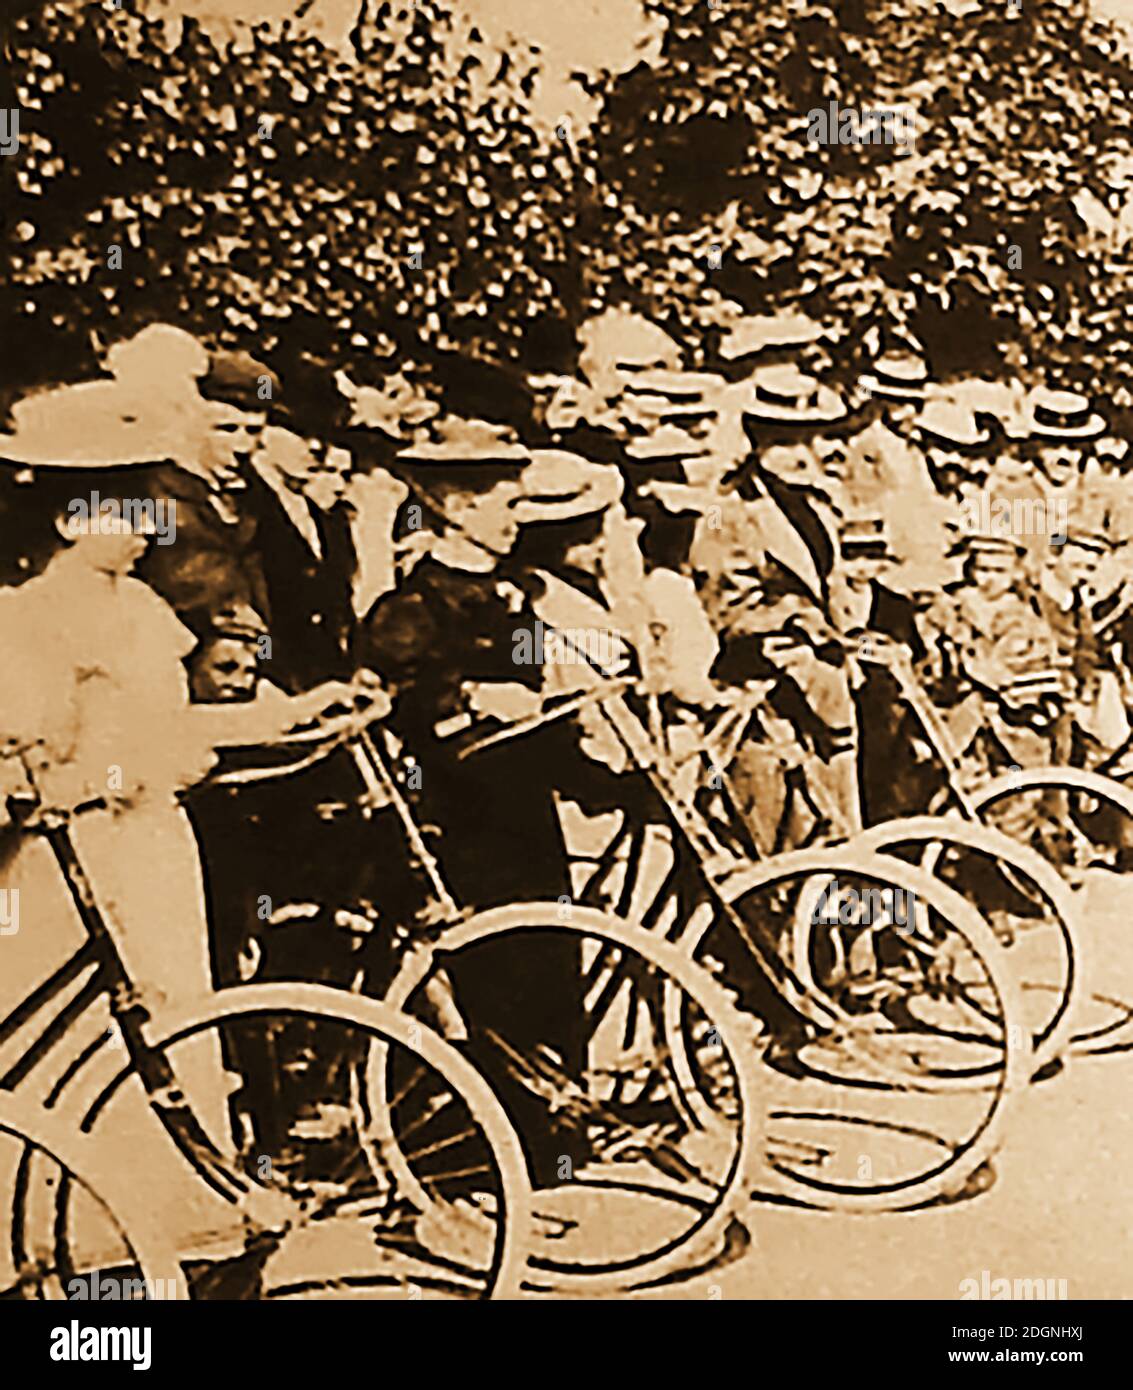 Club de cyclisme victorien pour femmes. L'invention de la bicyclette de sécurité a commencé une nouvelle folie dans le cyclisme en particulier parmi les femmes qui ont formé des clubs de cyclisme. Les clubs de cyclisme féminins comme la Lady cyclistes Association (LCA) étaient populaires en Grande-Bretagne et ailleurs. Banque D'Images